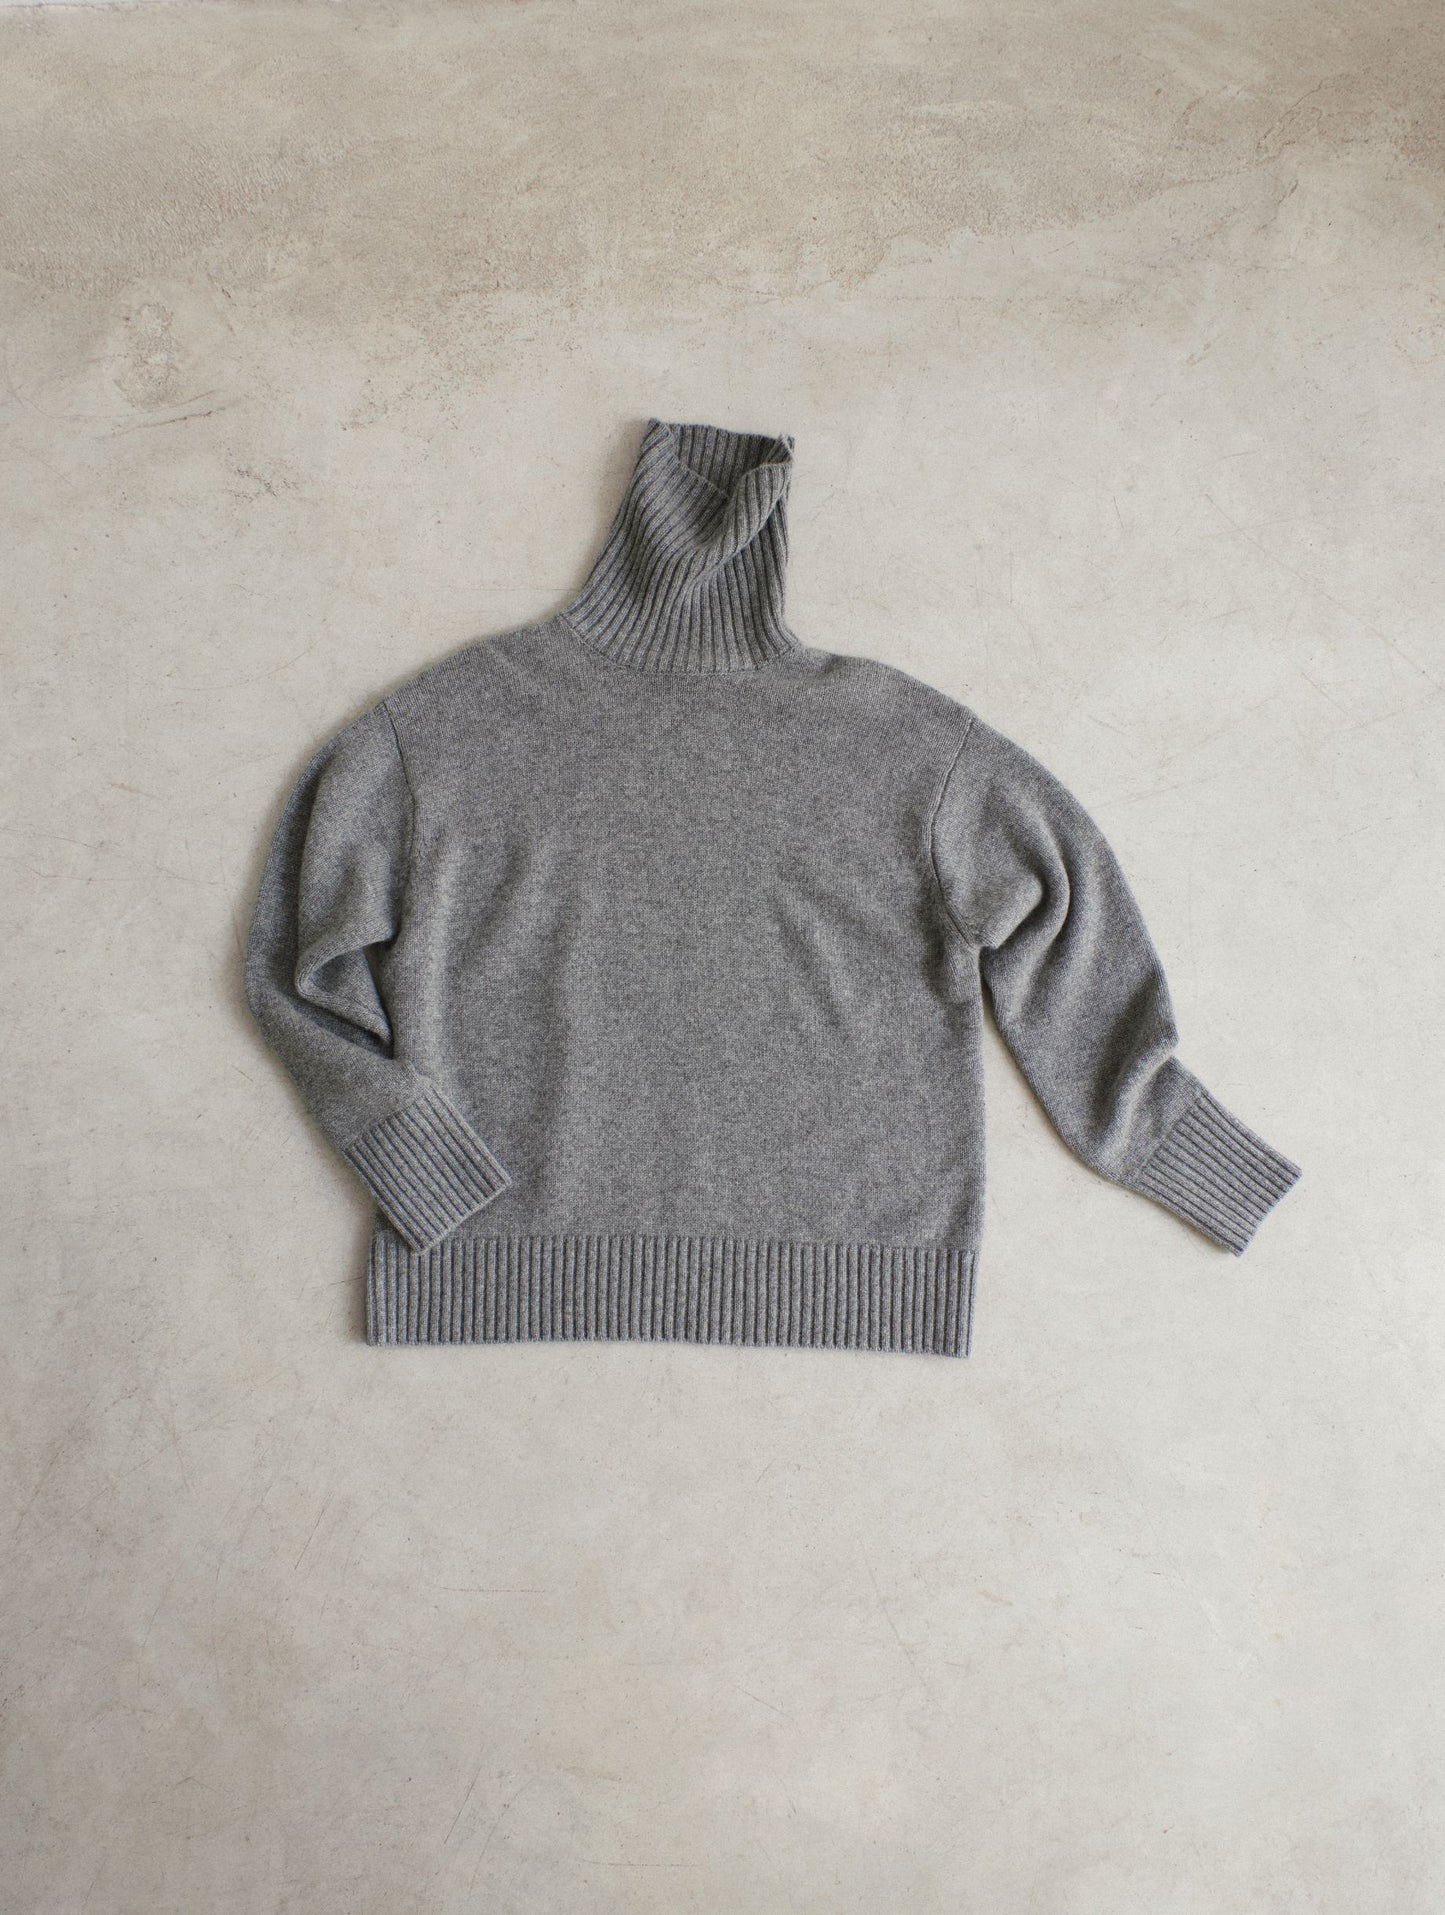 Cashmere knitted turtleneck jumper